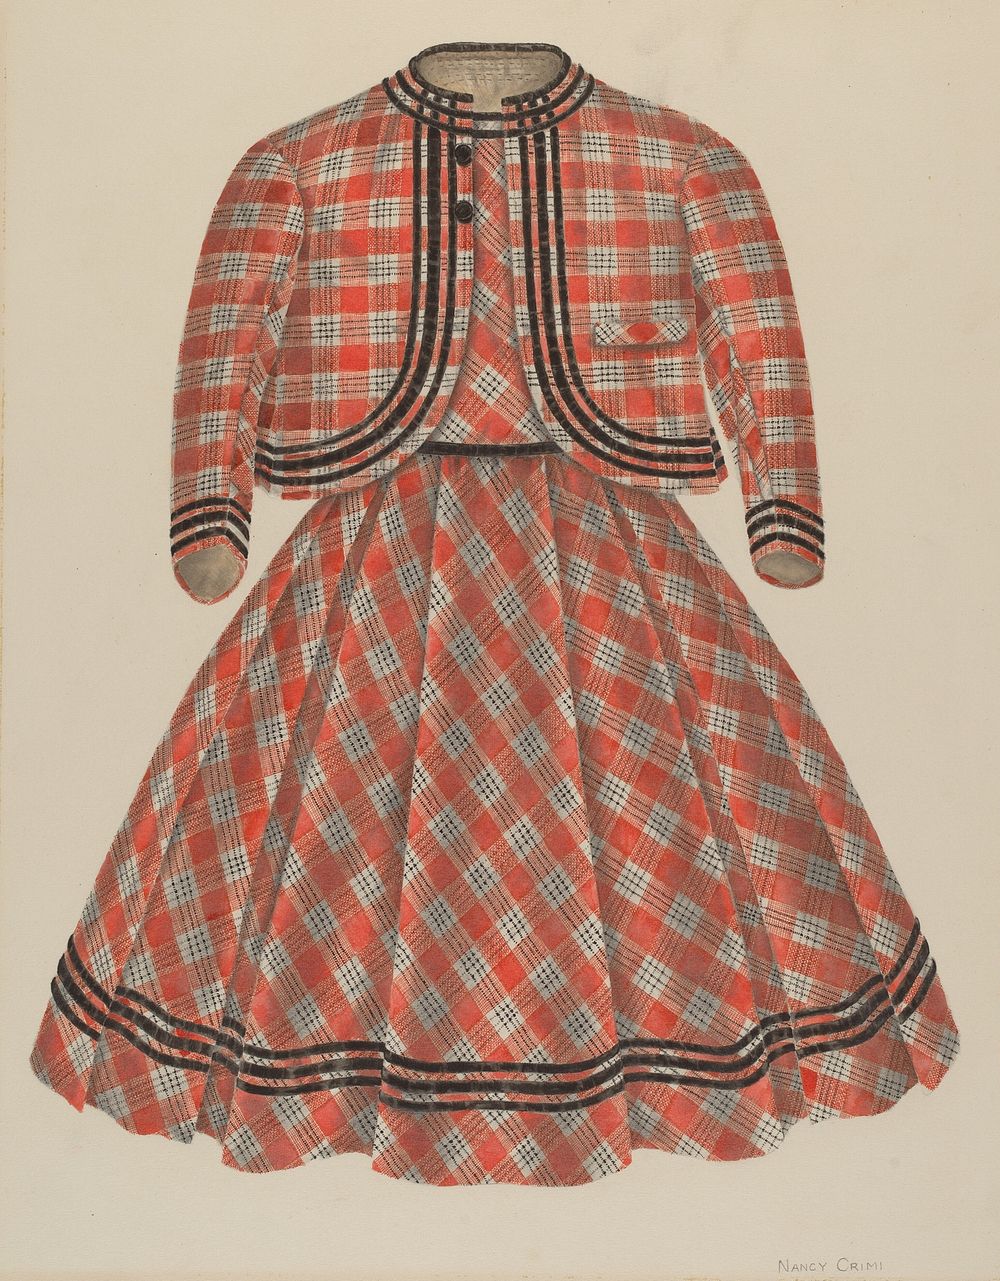 Boy's Dress and Jacket (ca. 1940) by Nancy Crimi.  